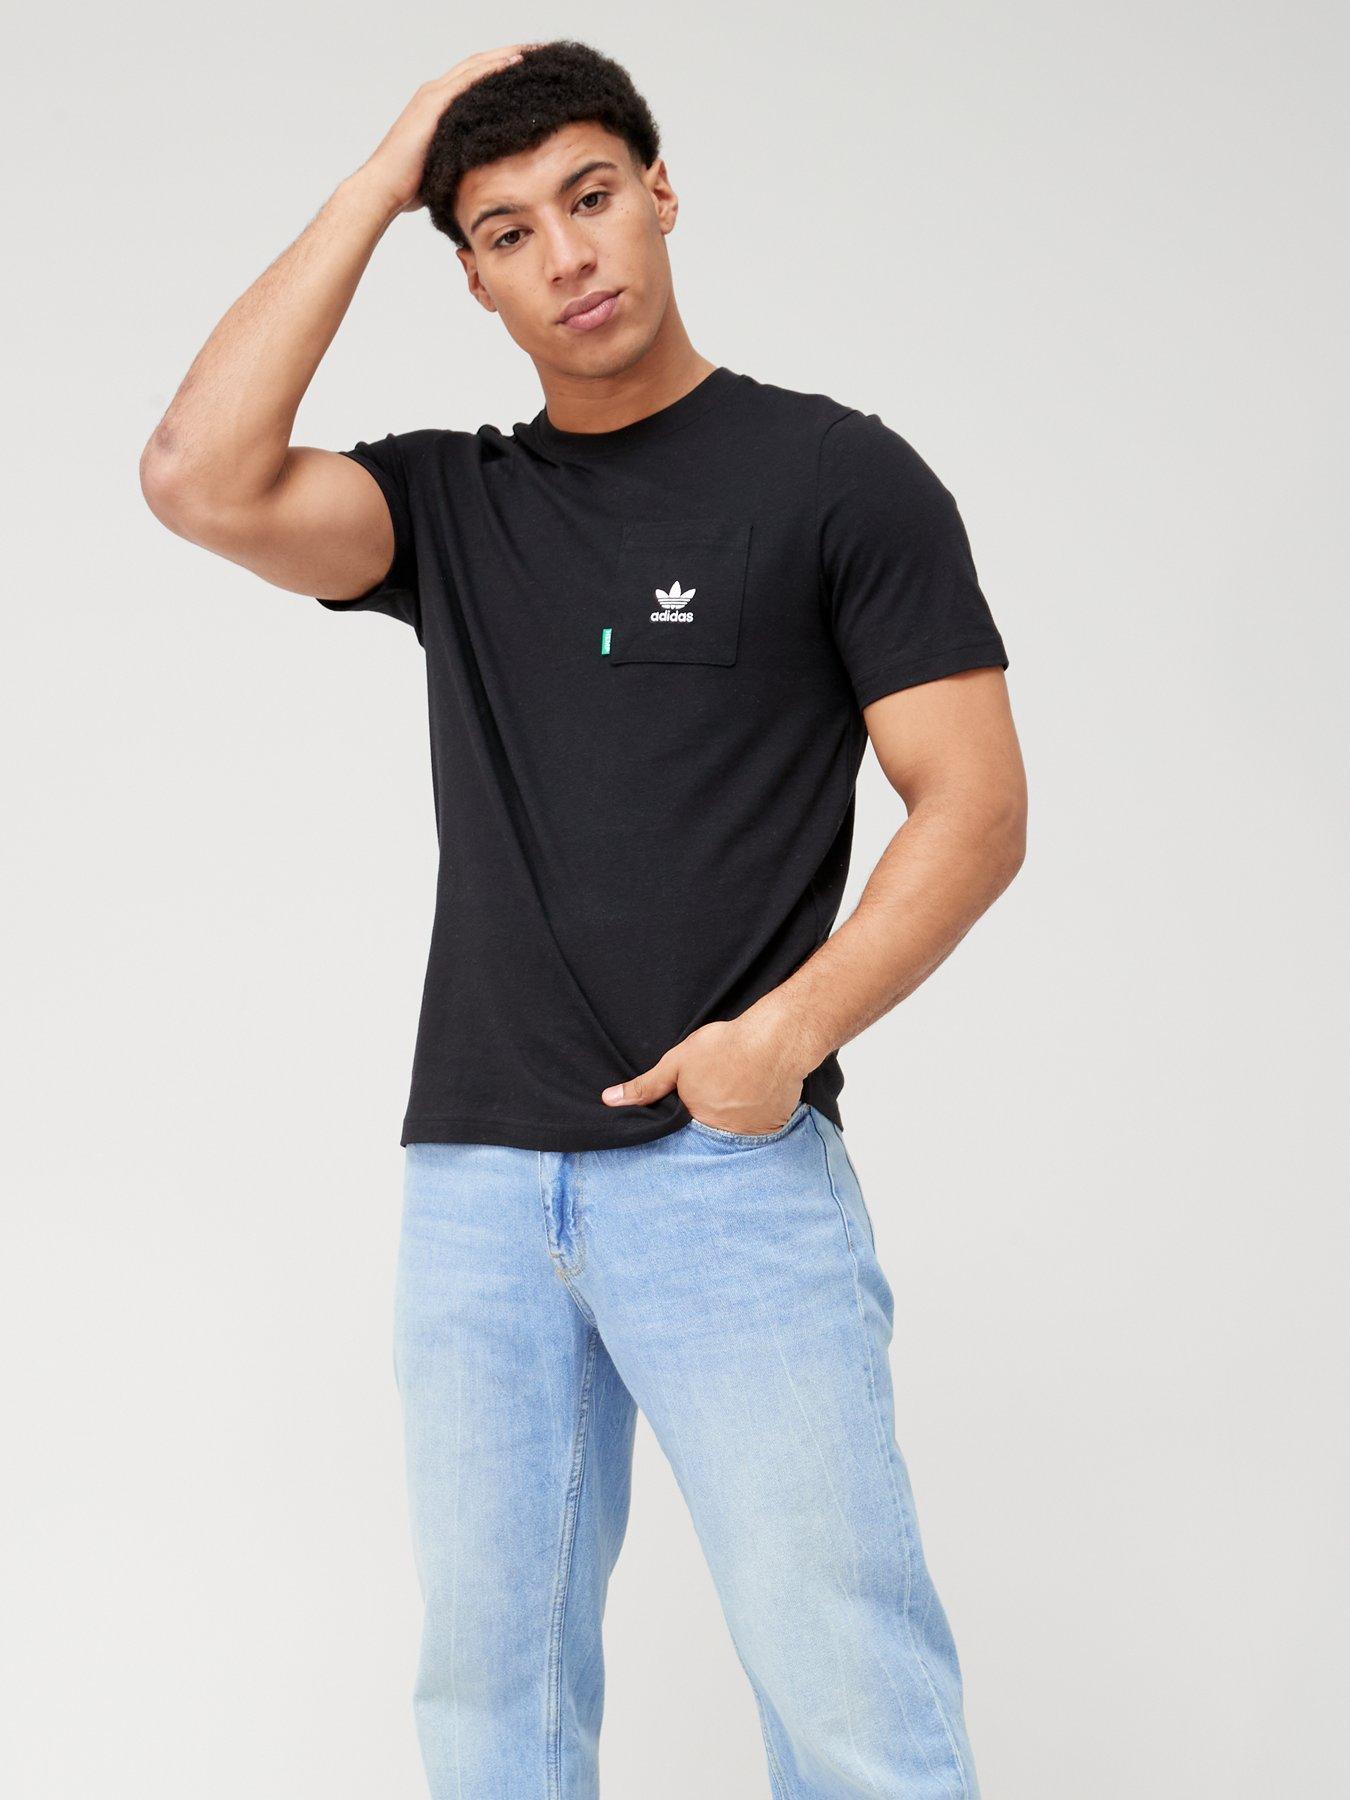 Made With T-Shirt Essentials+ Hemp Black Originals adidas -